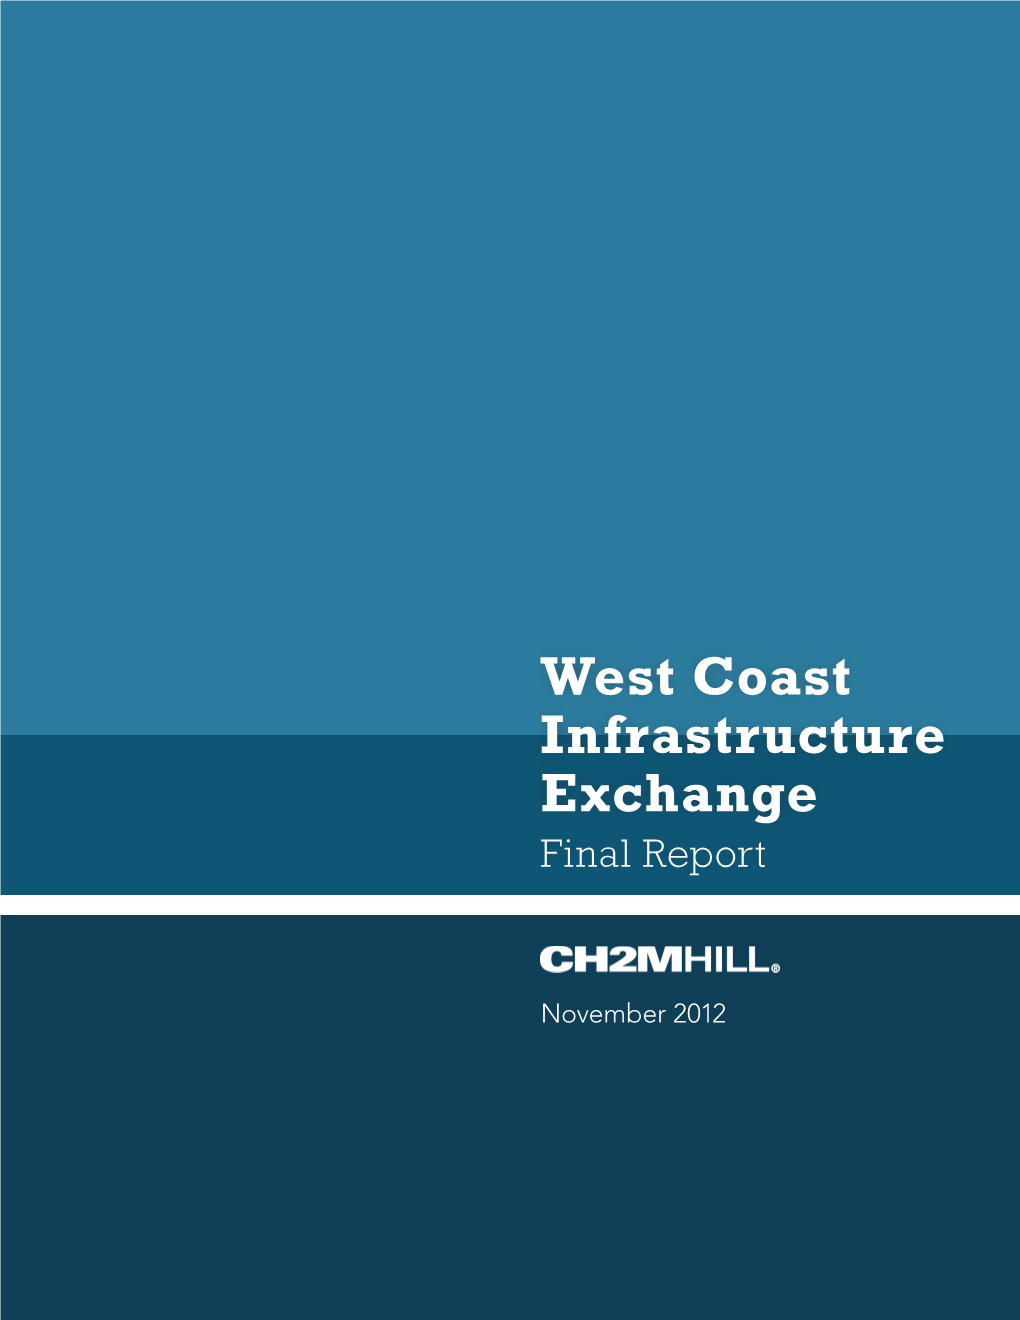 West Coast Infrastructure Exchange Final Report